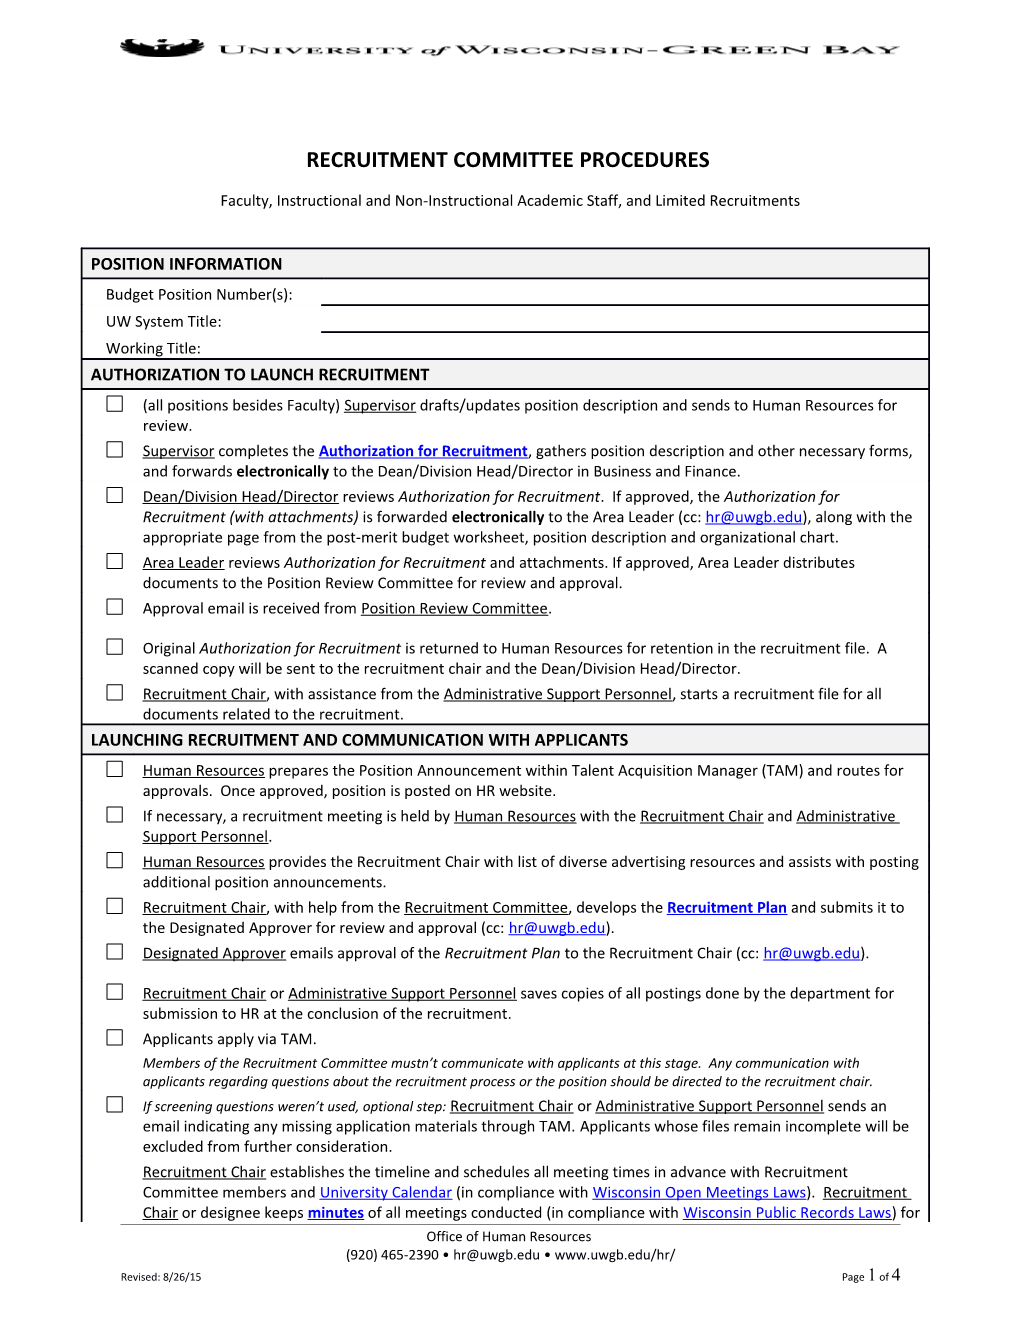 Recruitment Committee Procedures